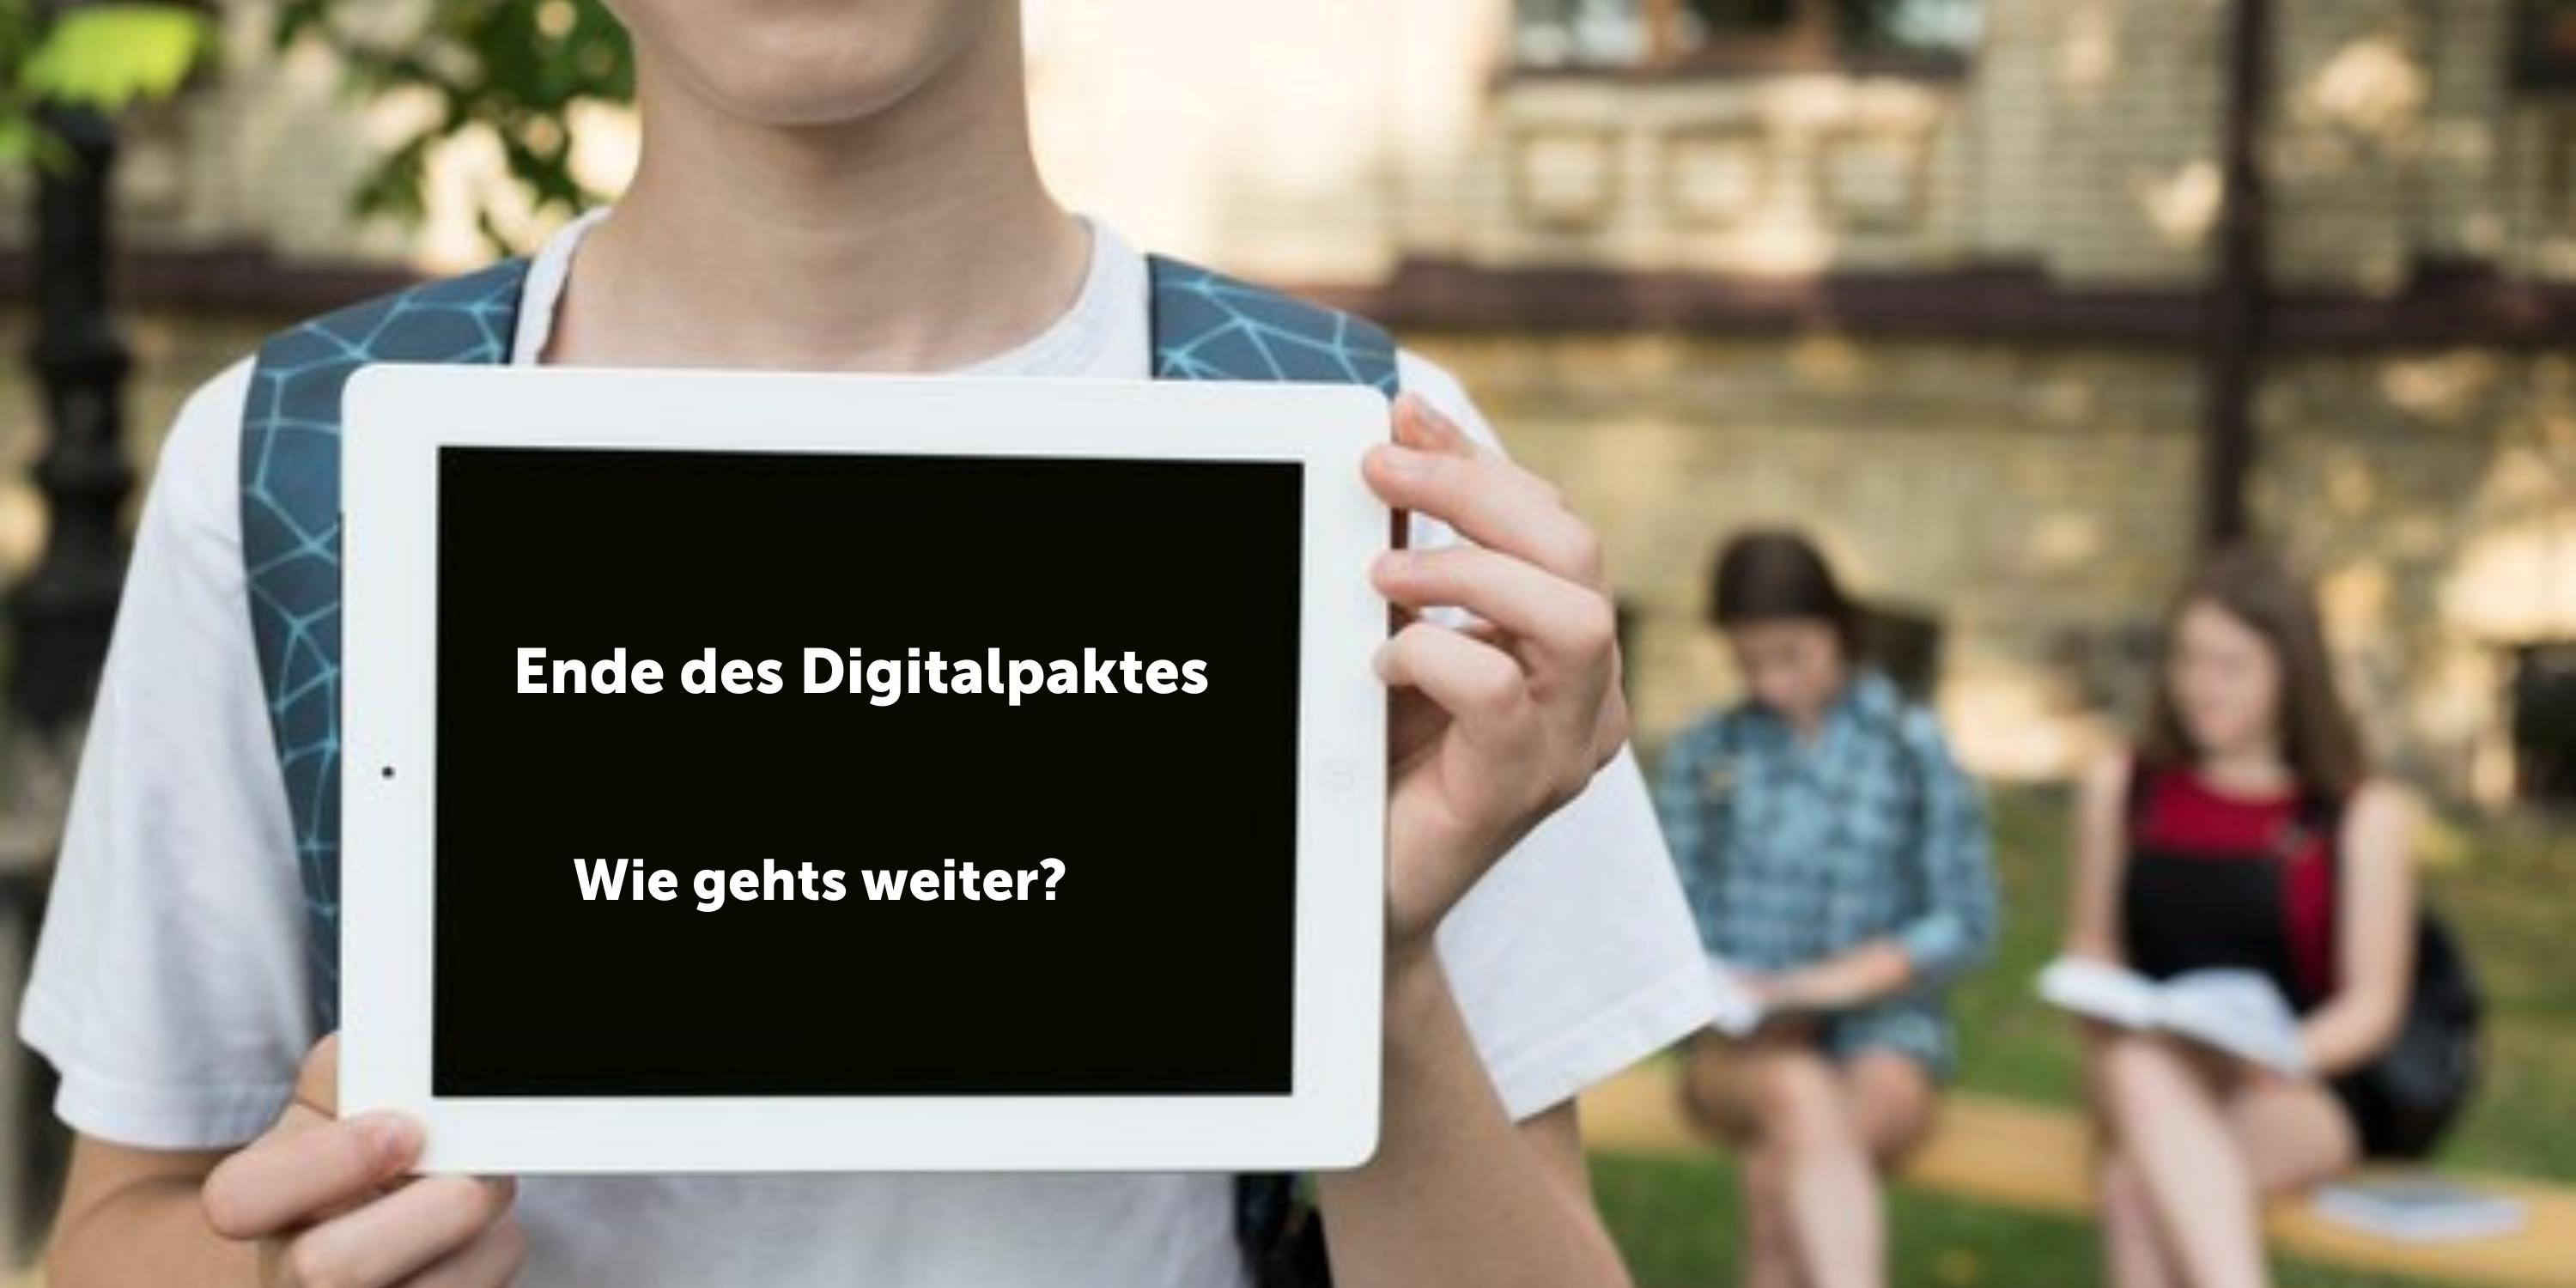 Digitalisierungspakt, Kind mit Tablet mit News zum Digitalpakt